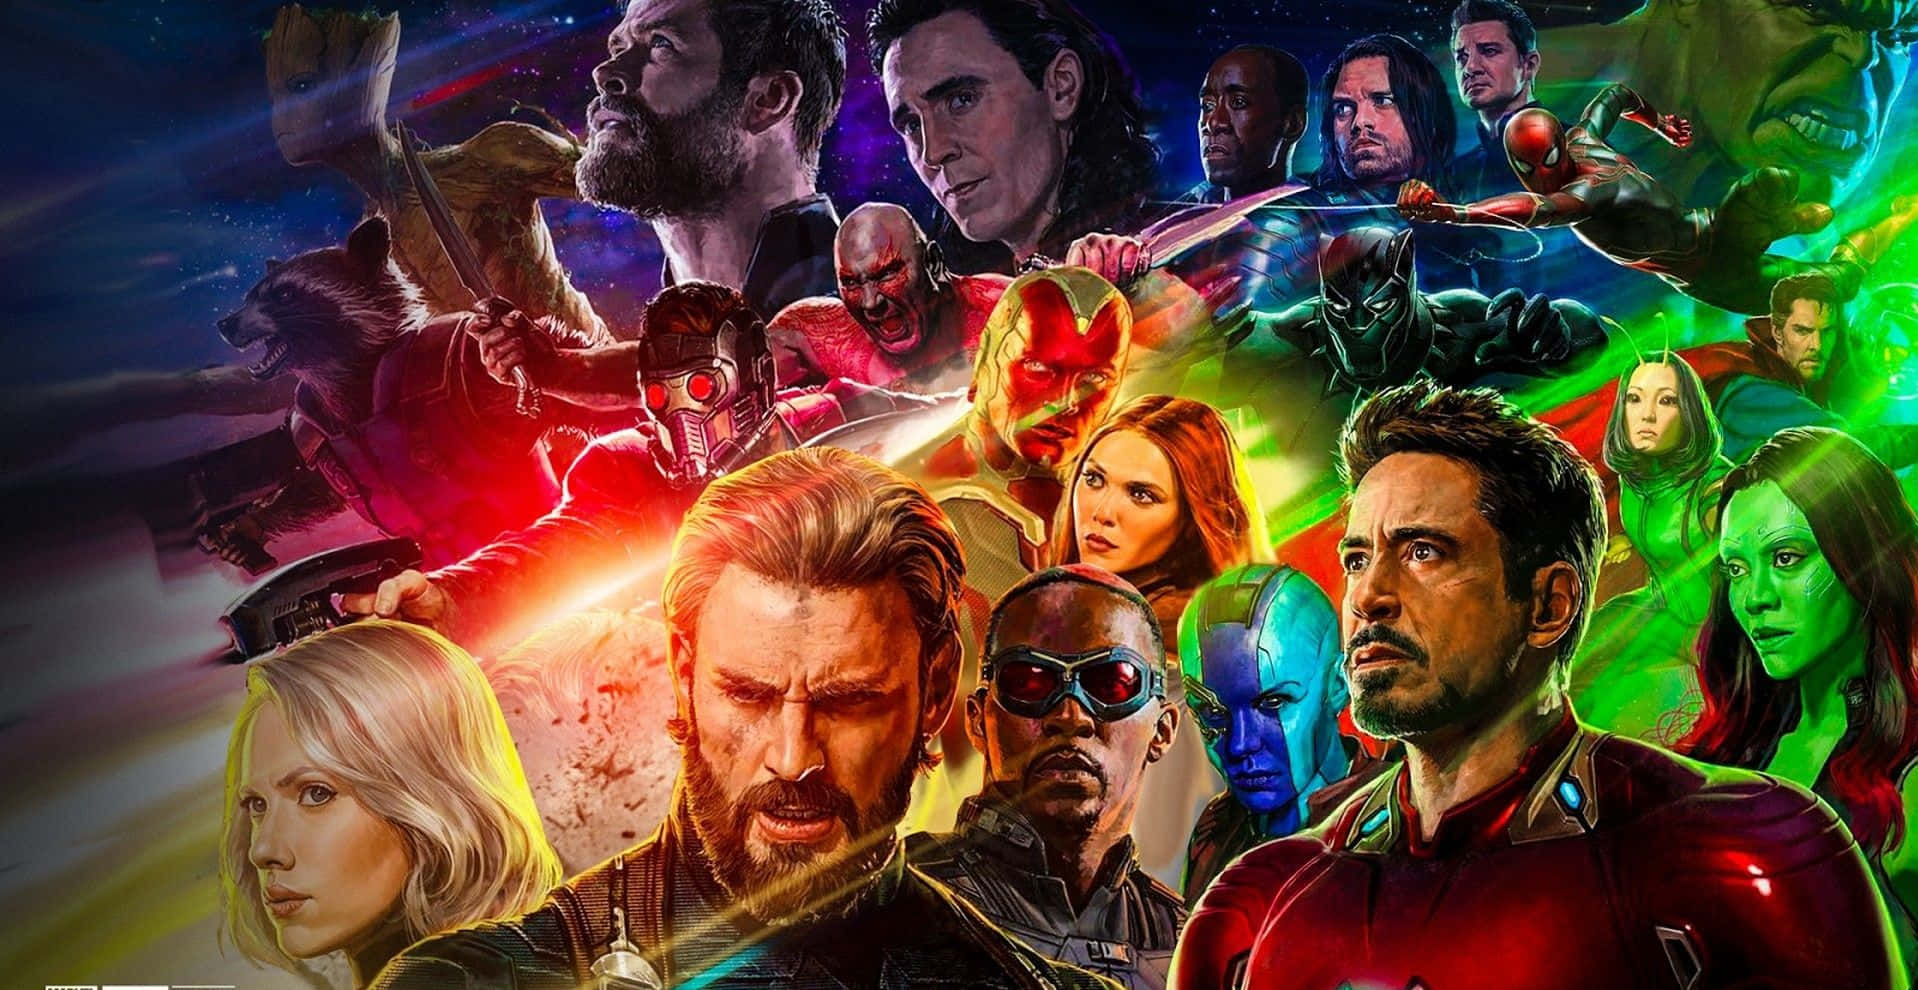 Marvelsbahnbrechender Superhelden-kampf - Avengers: Infinity War